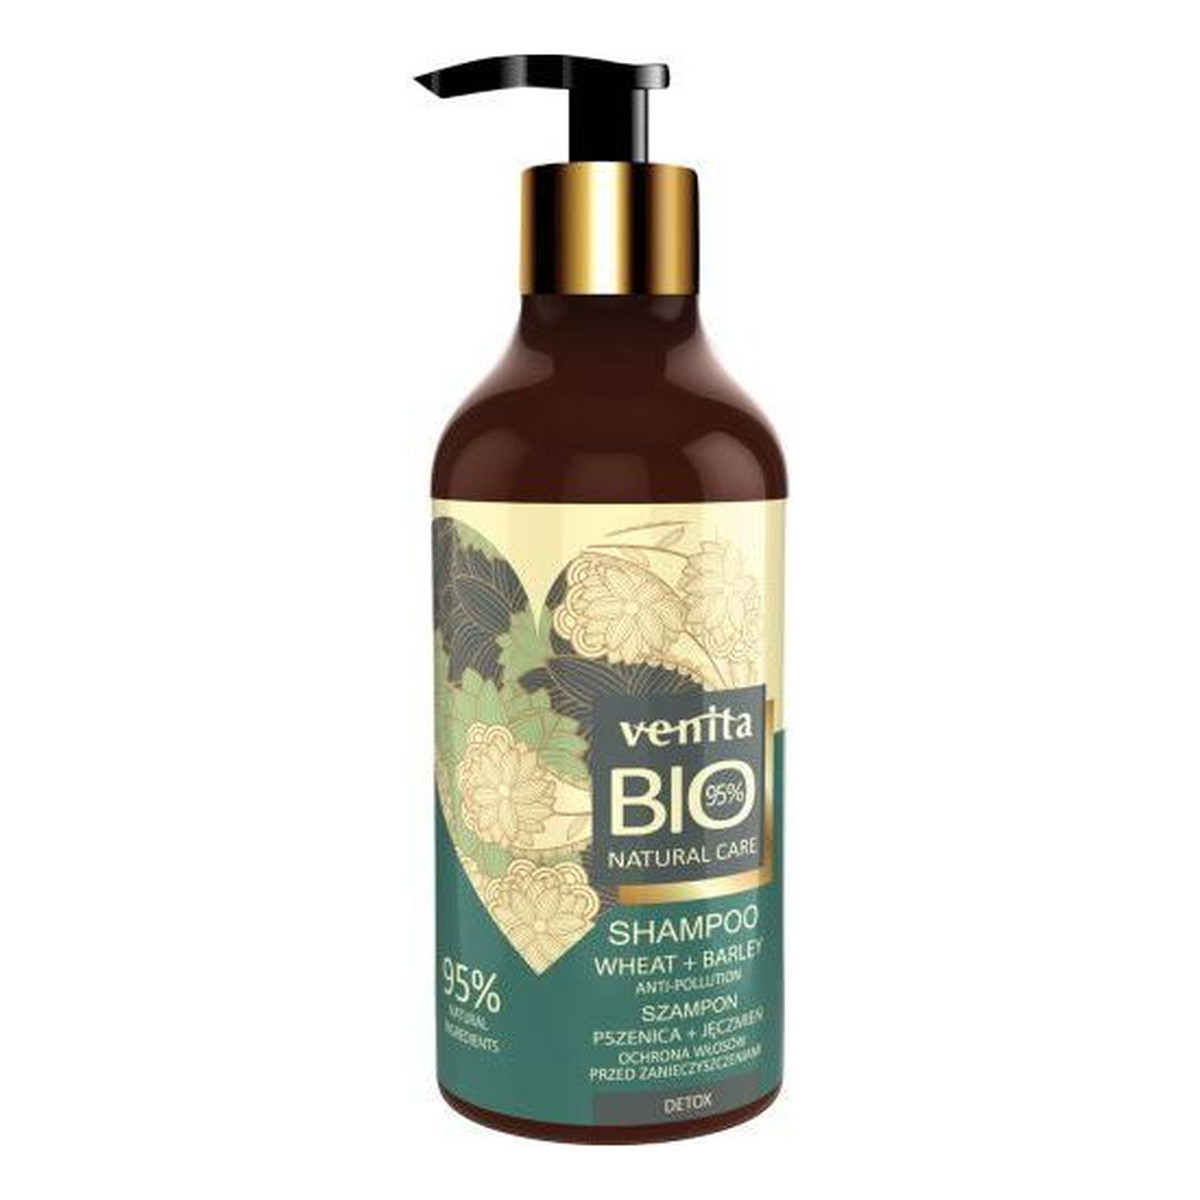 Venita Bio Natural Care Detox szampon do włosów chroniący przed zanieczyszczeniami Pszenica & Jęczmień 400ml